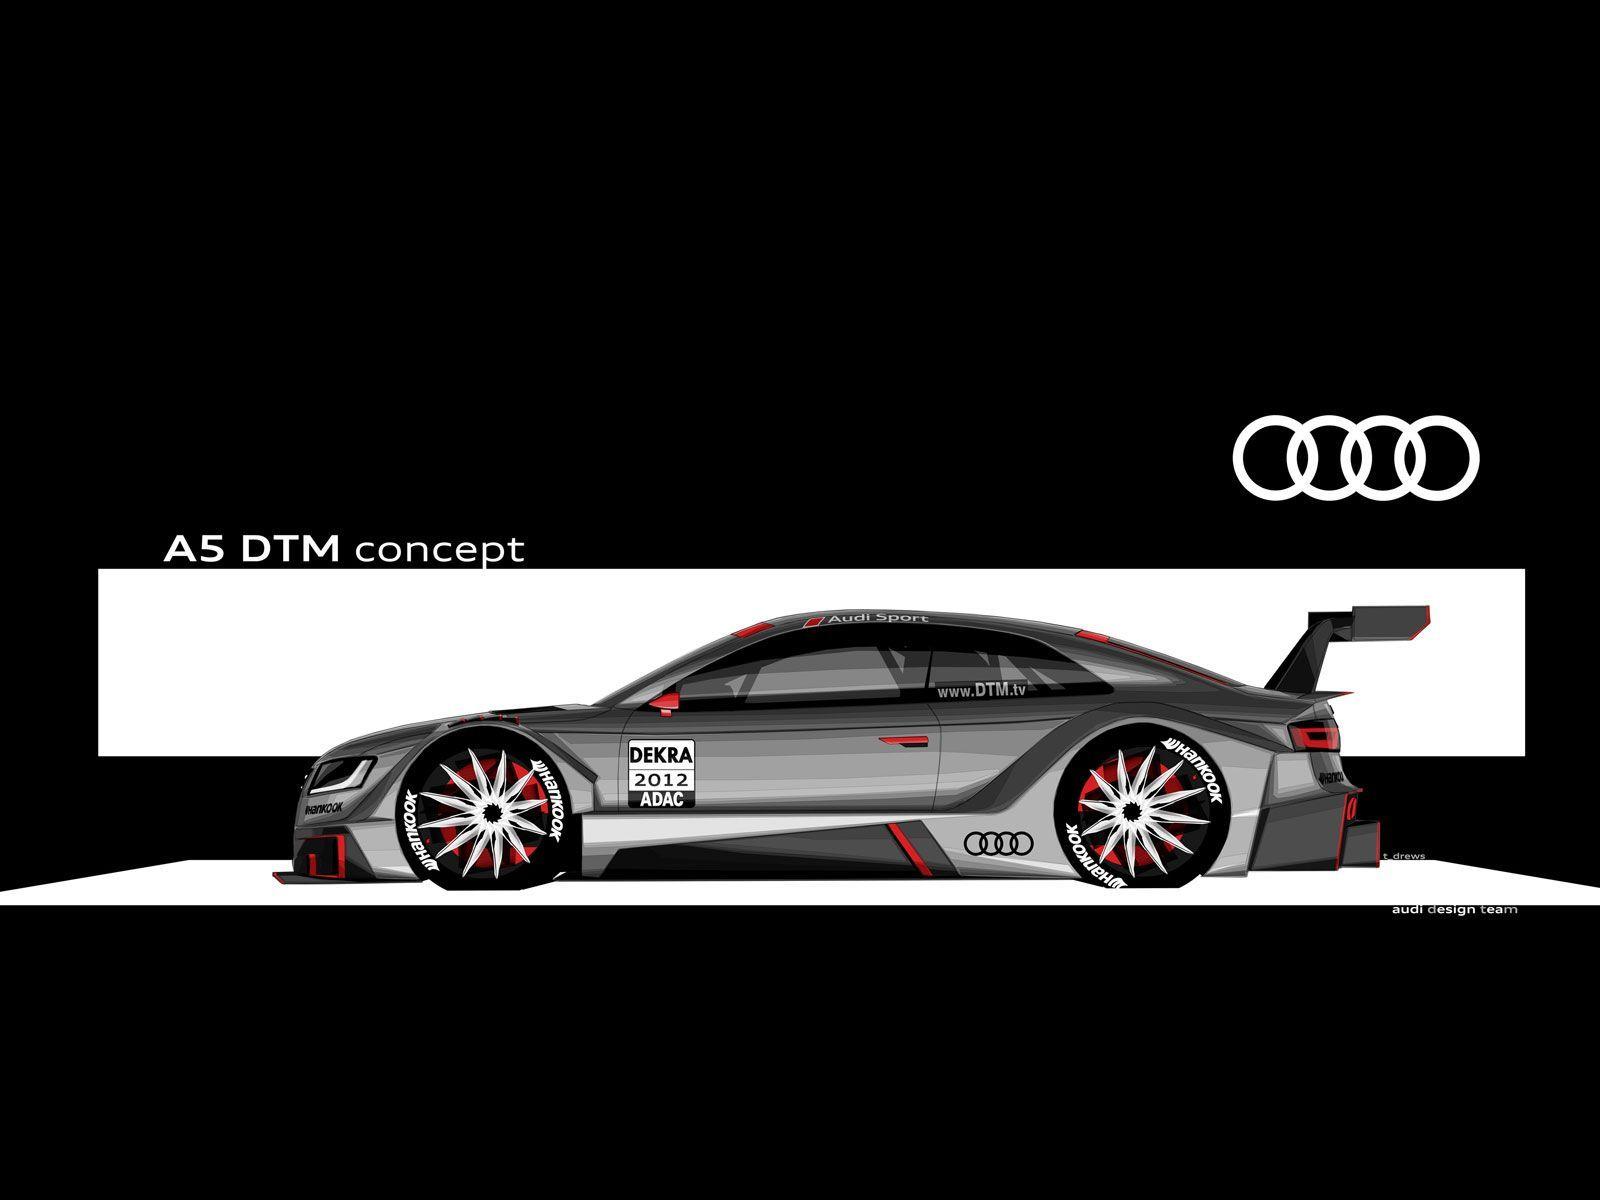 DTM Audi Banks on A